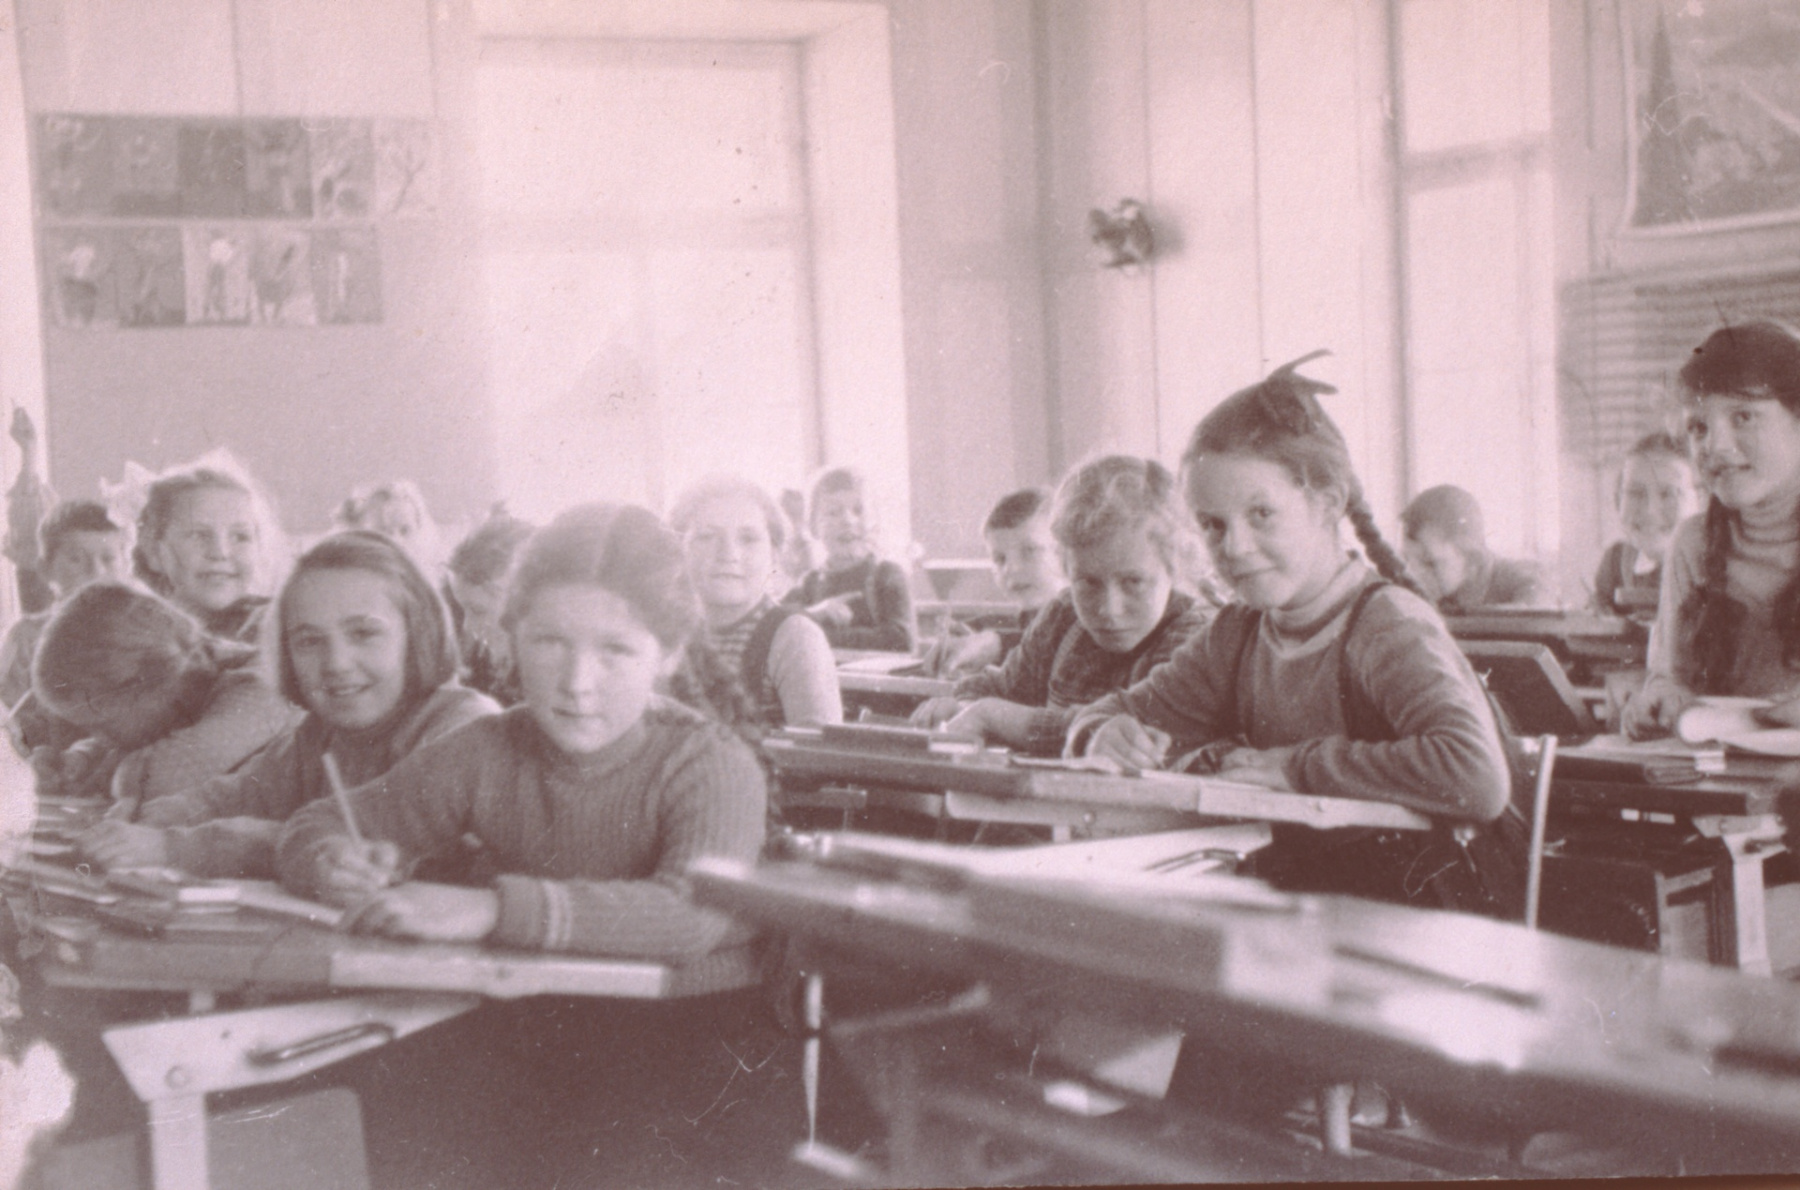 Primarschule Bettswil ca 1956